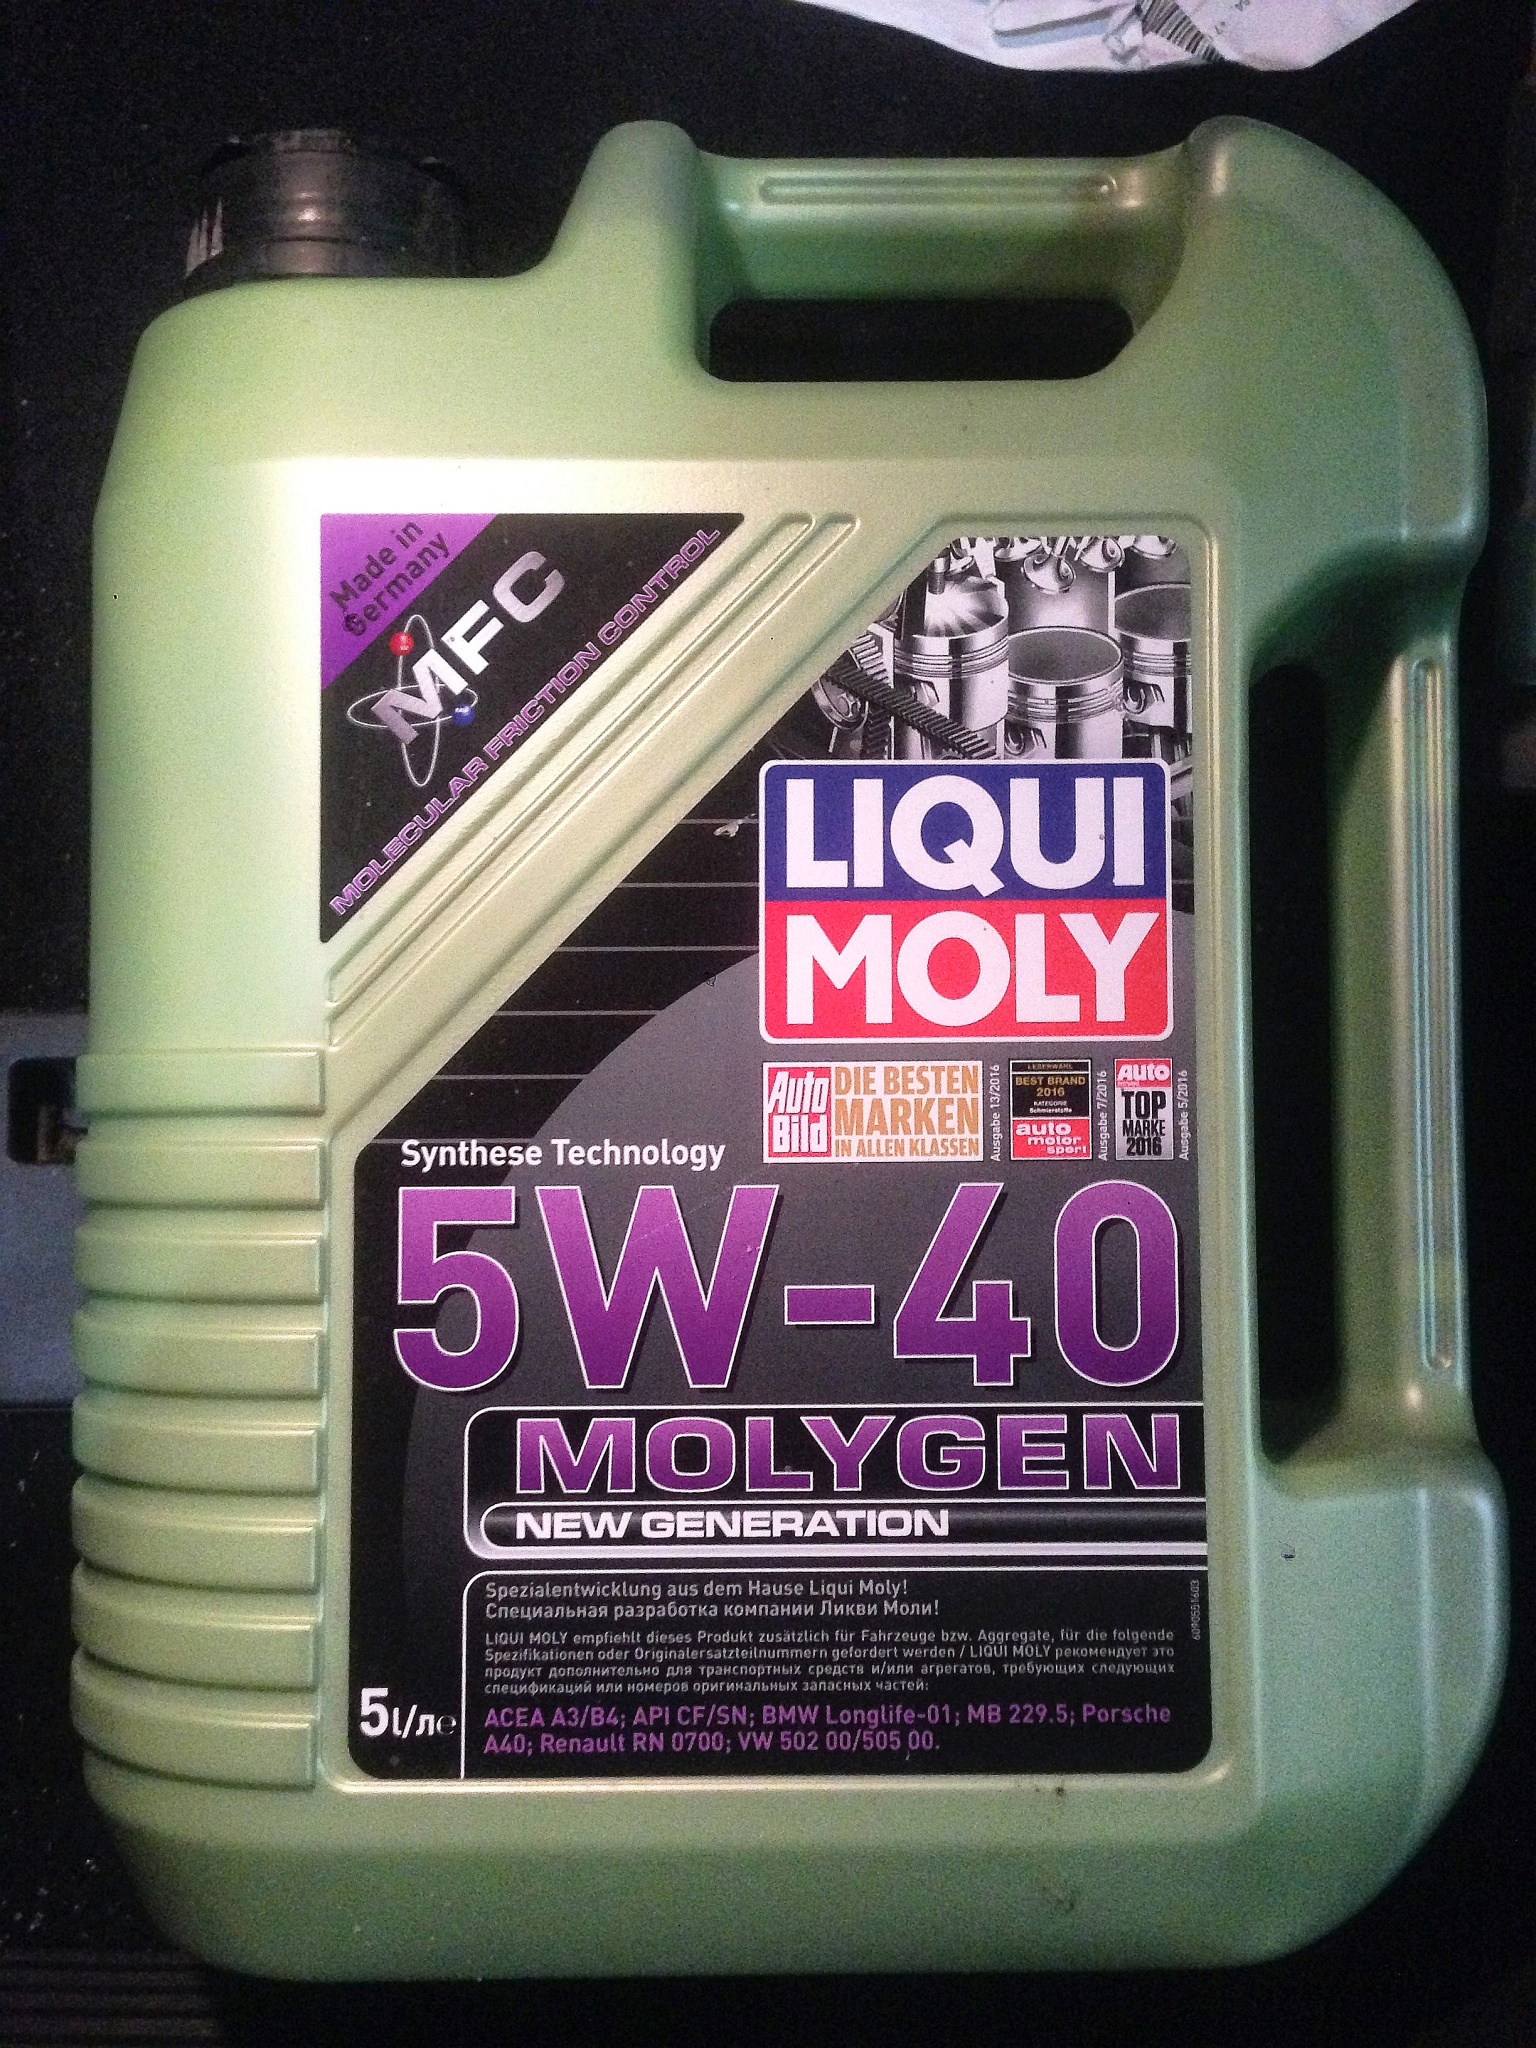 Масло ликви моли 5w40 отзывы. Масло Liqui Moly Molygen. Ликви моли молиген 5w40 синтетика. Molygen 5w-40. Моторное масло Ликви моли 5w40 синтетика.